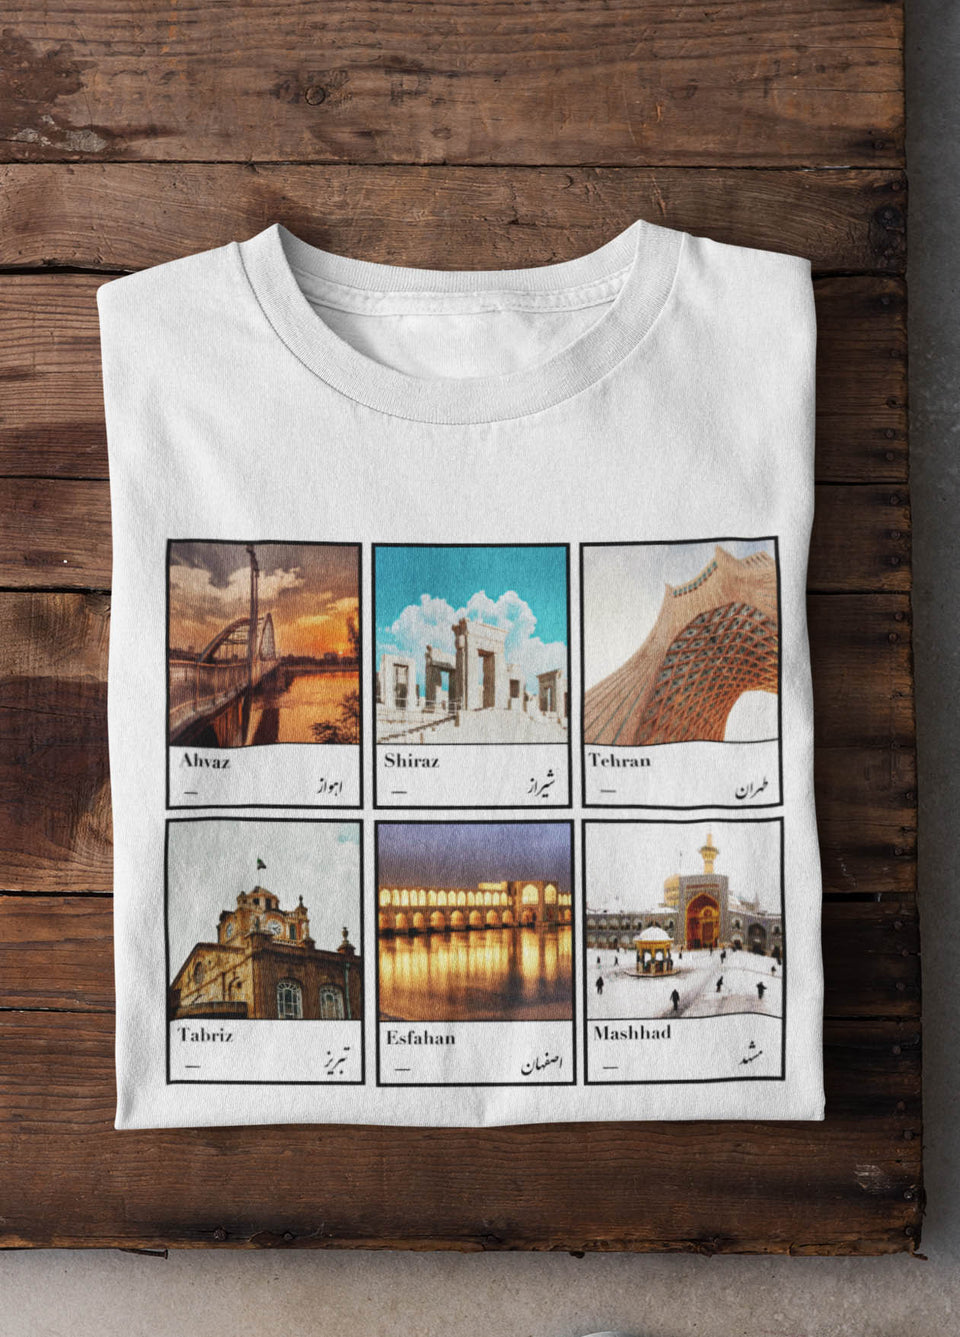 Six Cities of Motherland Women's T-Shirt